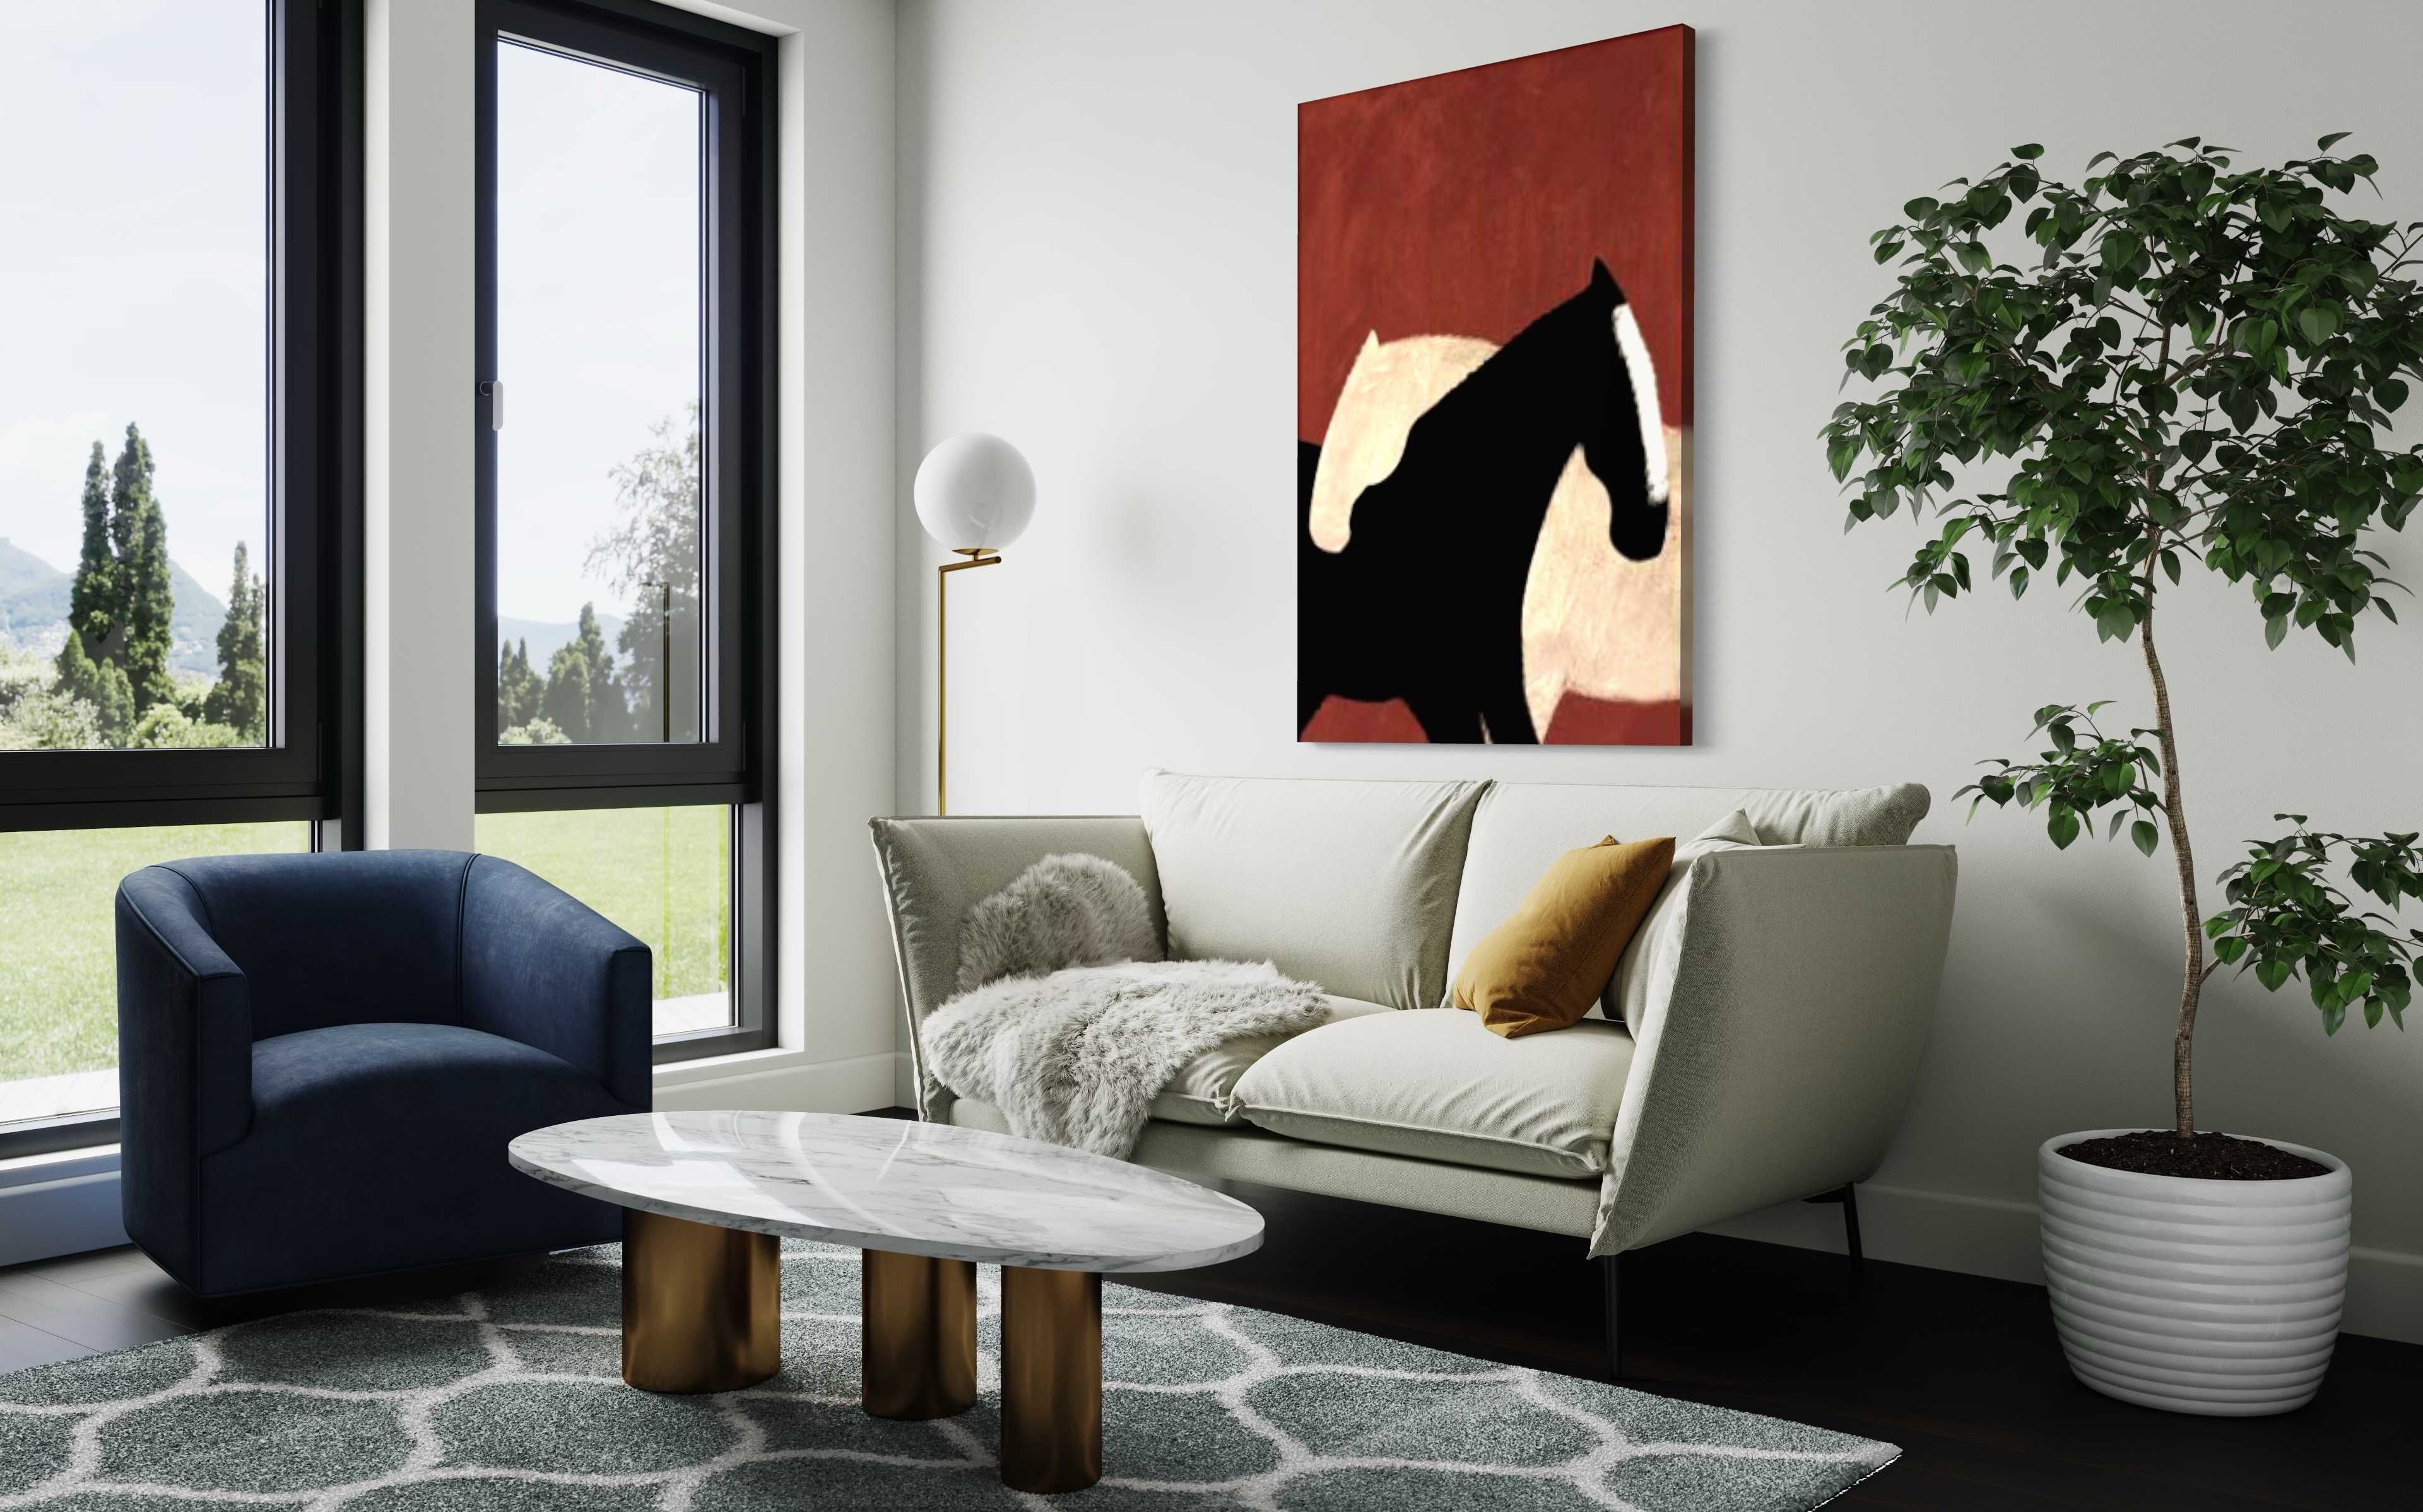 Картина лошади холст масло абстрактный минимализм живопись кони